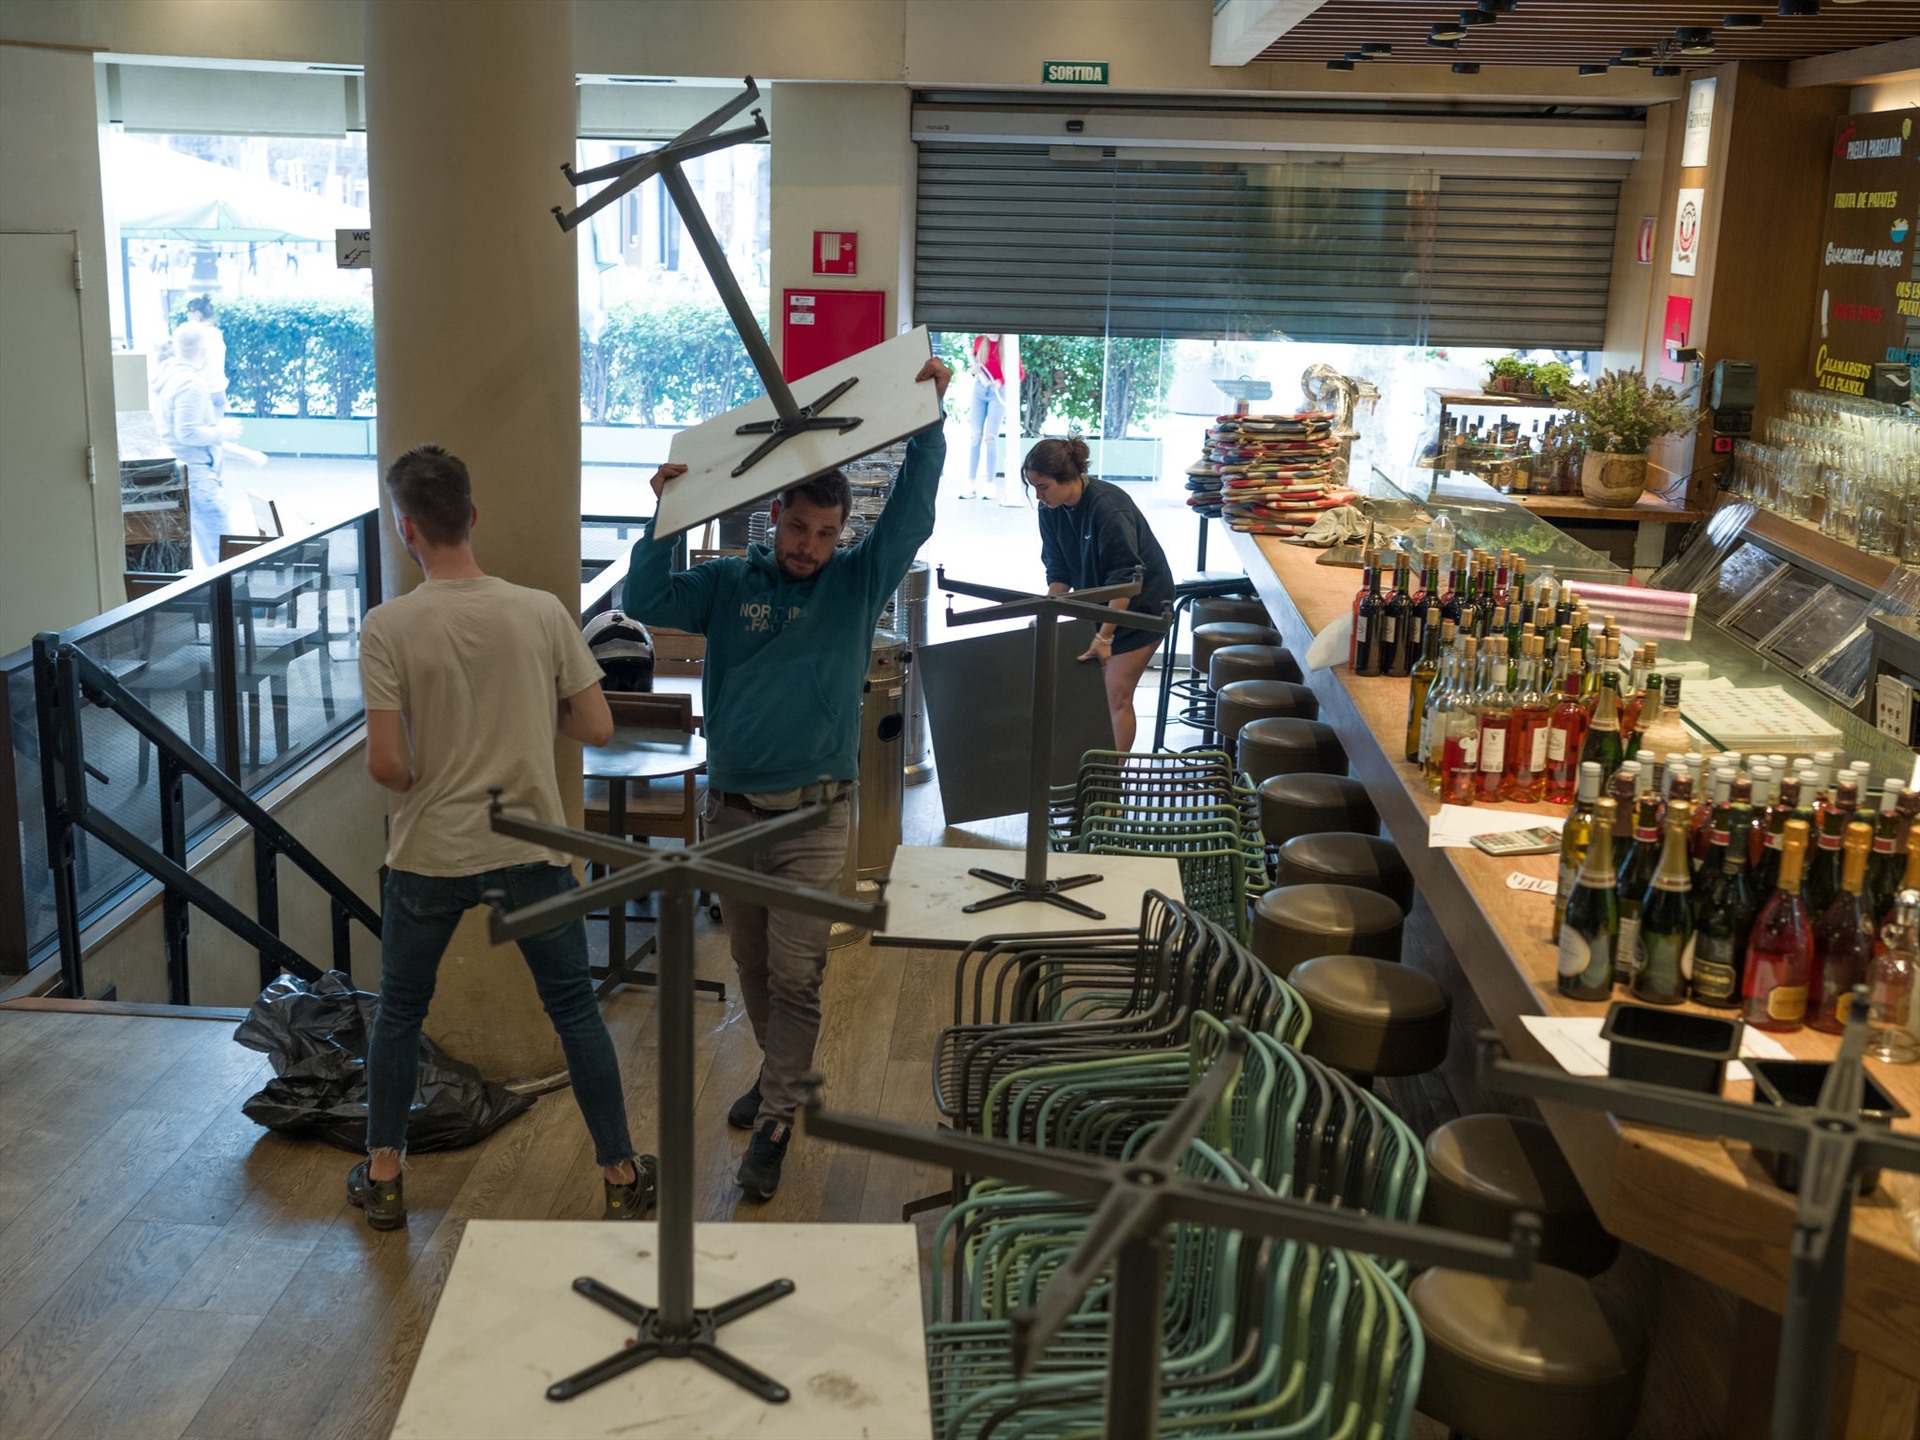 Nhân viên nhà hàng ở Barcelona (Tây Ban Nha) dọn dẹp bàn ghế, hàng quán sau lệnh tạm ngưng hoạt động của chính phủ. Ảnh: The New York Times.